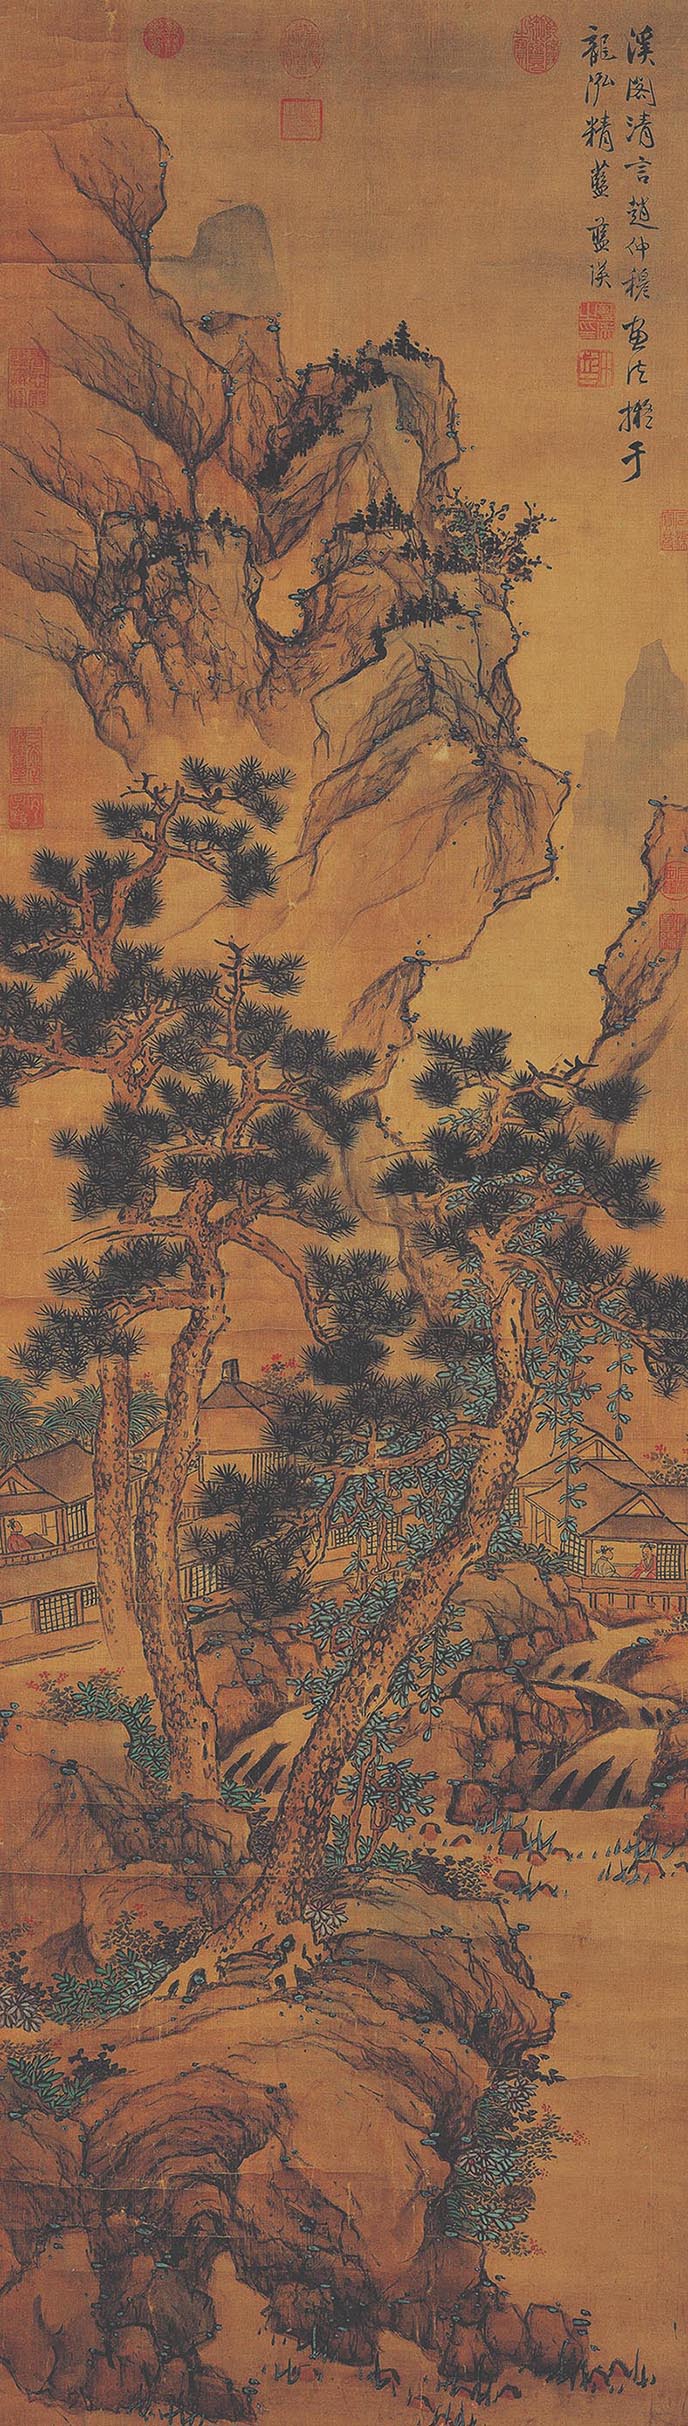 蓝瑛《溪阁清言图》轴-台北故宫博物院(图1)